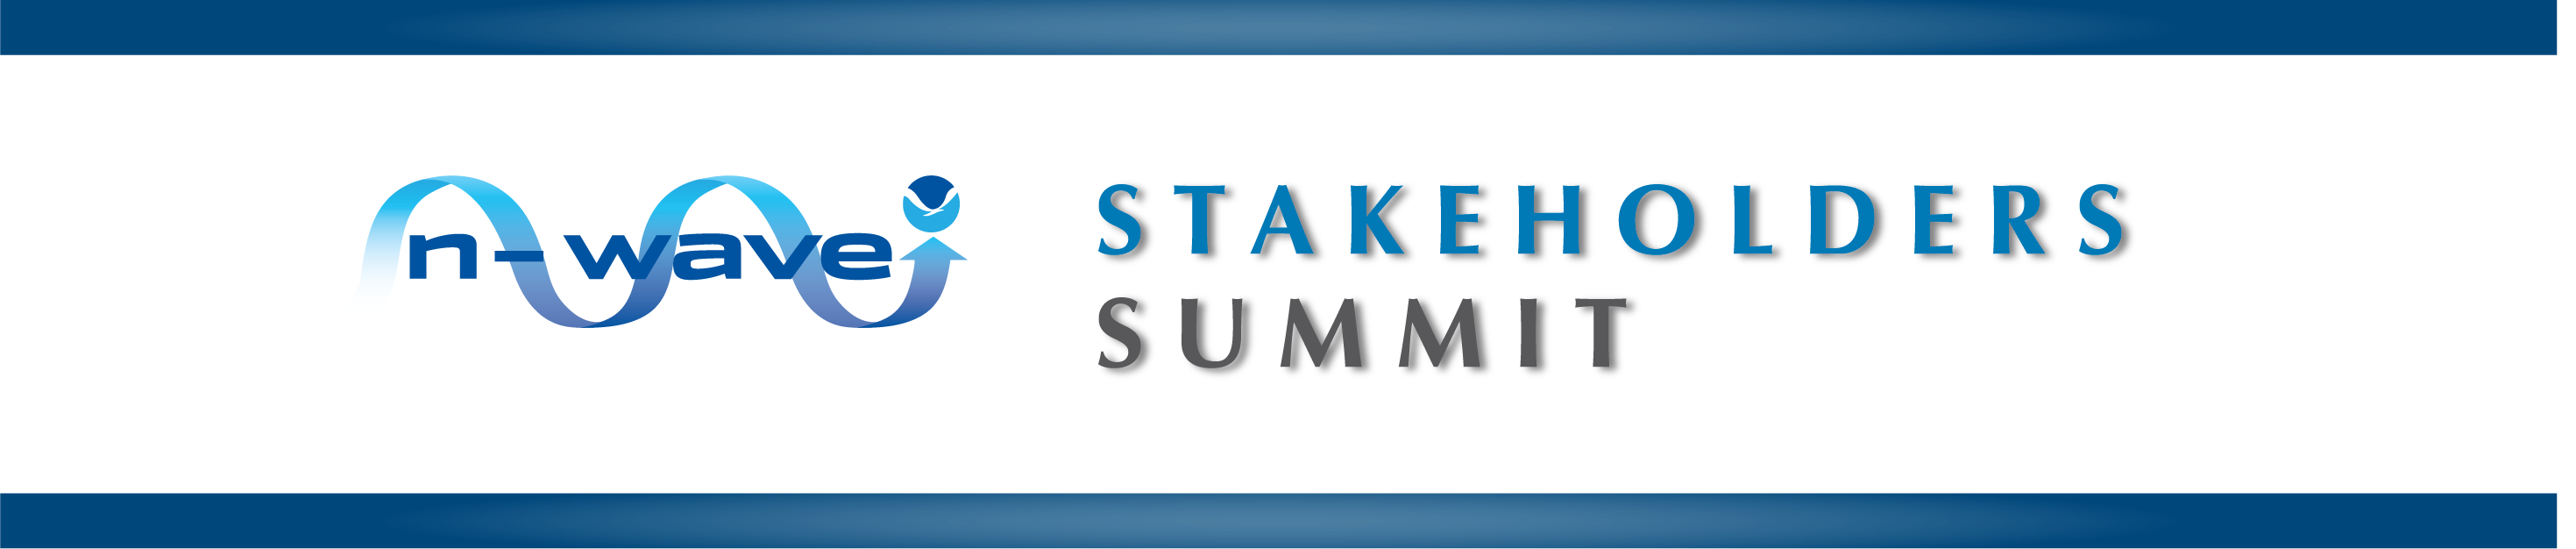 N-Wave Stakeholders Summit Banner